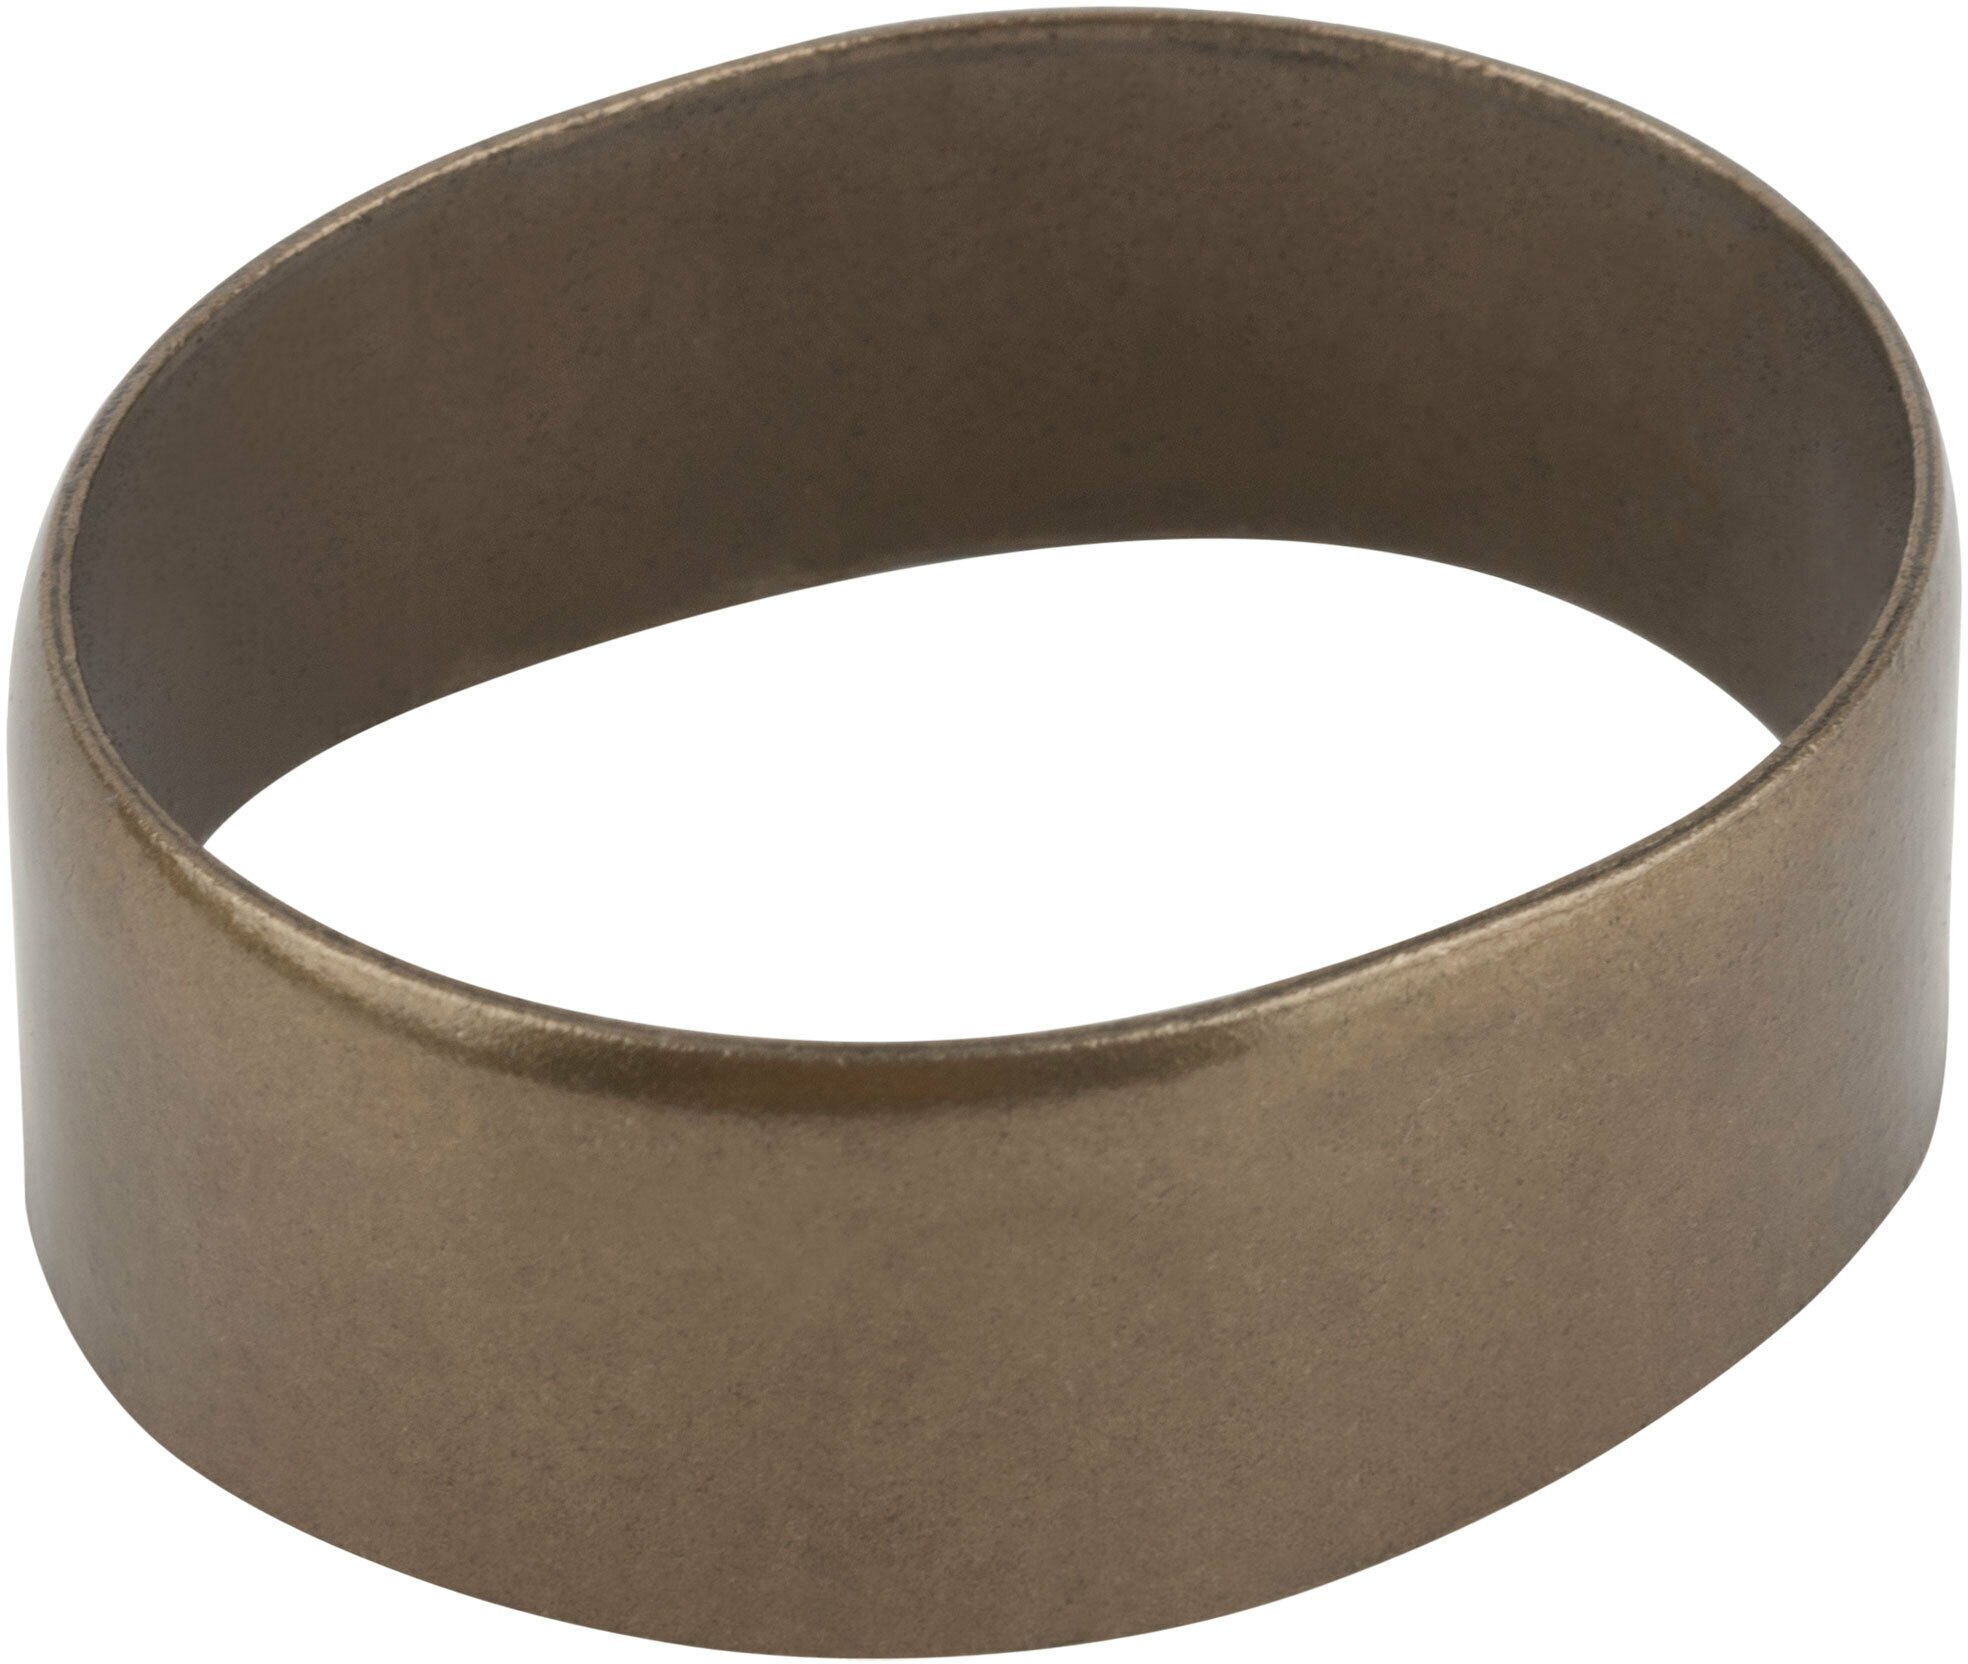 Приспособление для крепления косы ПК-4 (кольцо)- диаметр для черенка 39 мм, материал: инструментальная сталь. Прочное и выдерживает большие нагрузки.